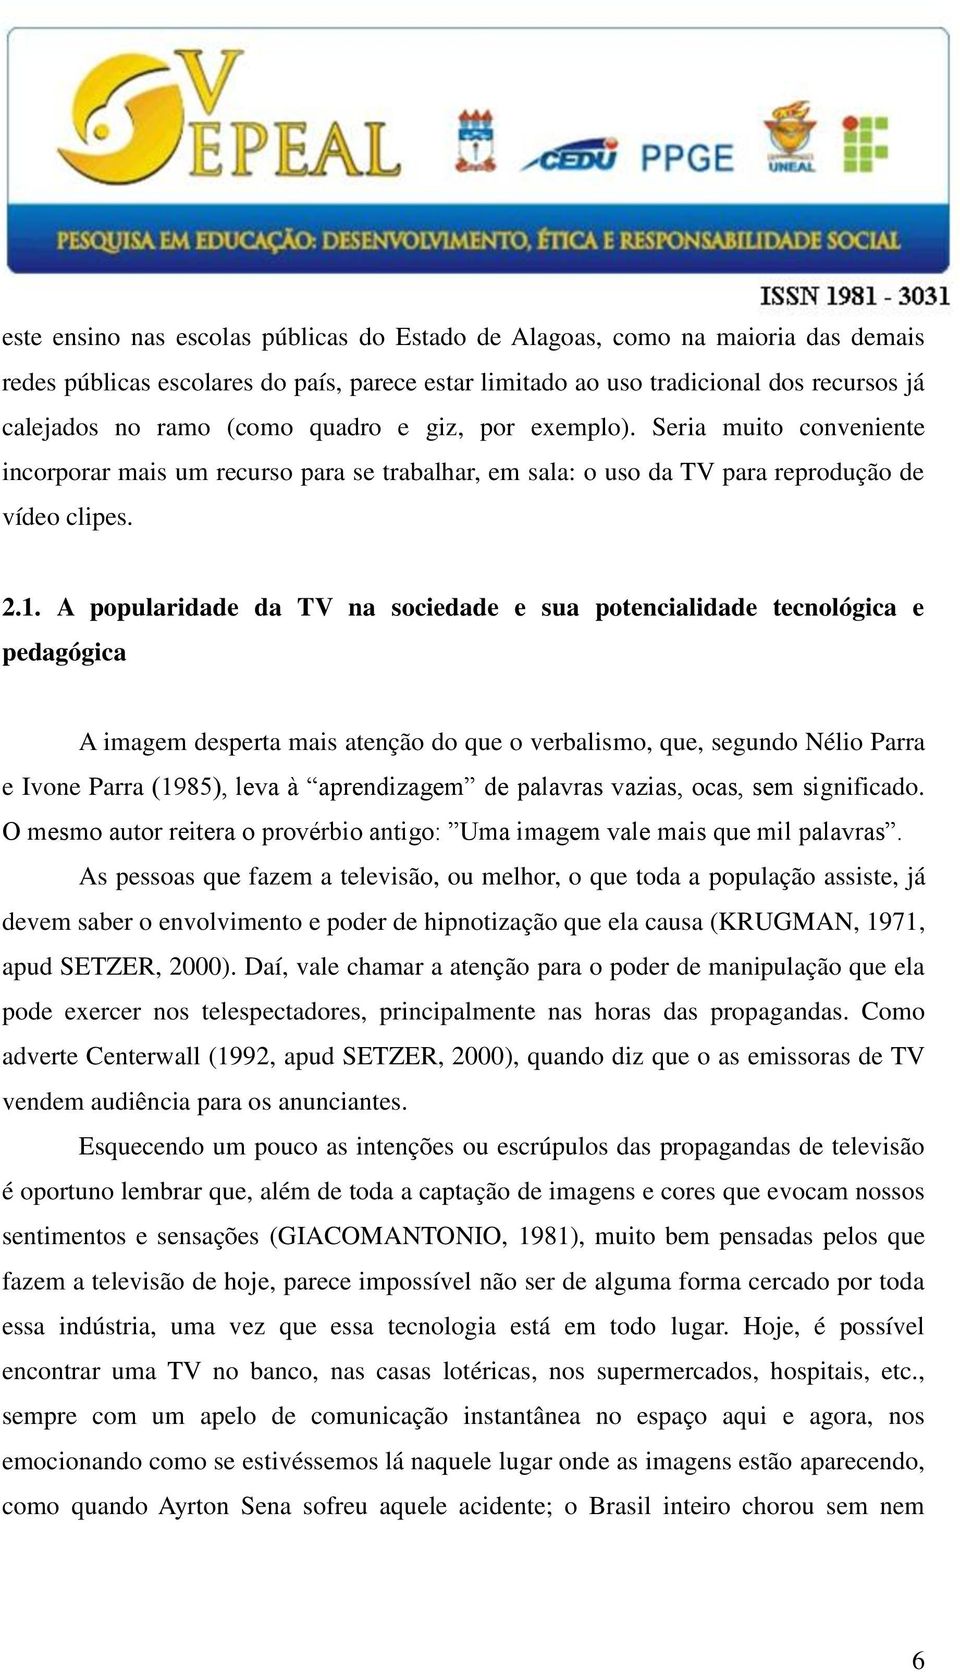 A popularidade da TV na sociedade e sua potencialidade tecnológica e pedagógica A imagem desperta mais atenção do que o verbalismo, que, segundo Nélio Parra e Ivone Parra (1985), leva à aprendizagem